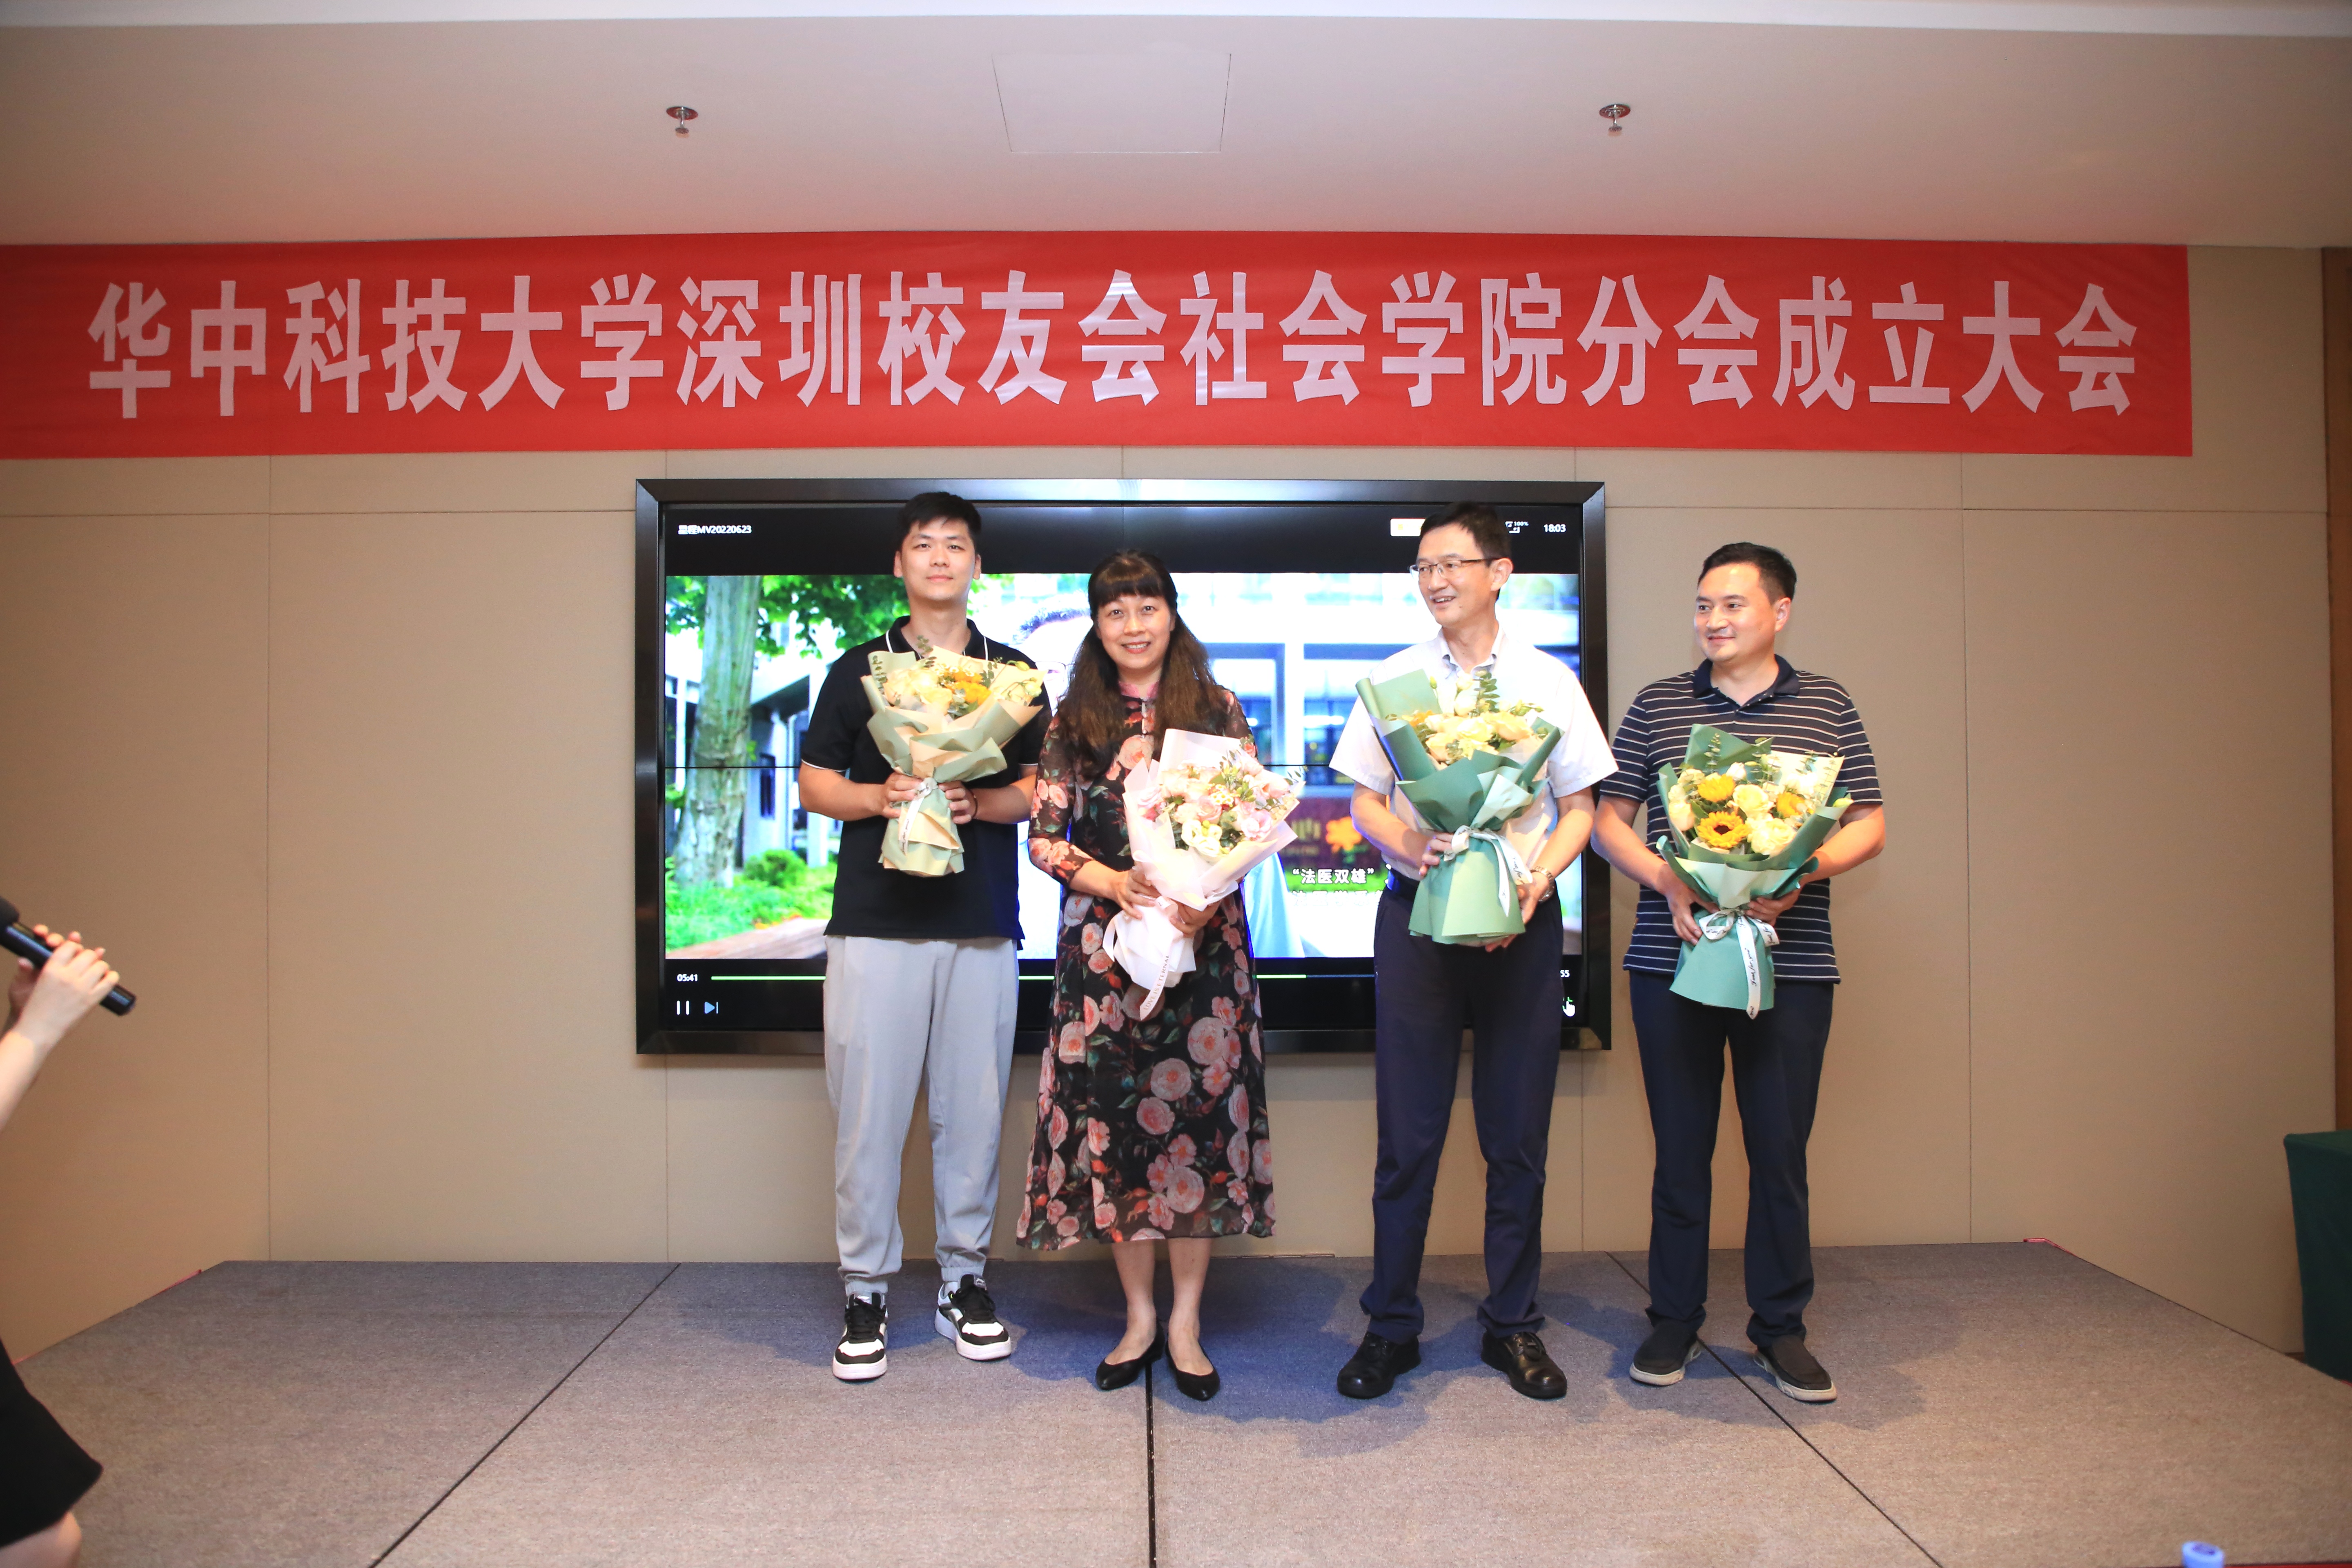 图片三：四位社会学院老师接受在深校友送上的鲜花.jpg